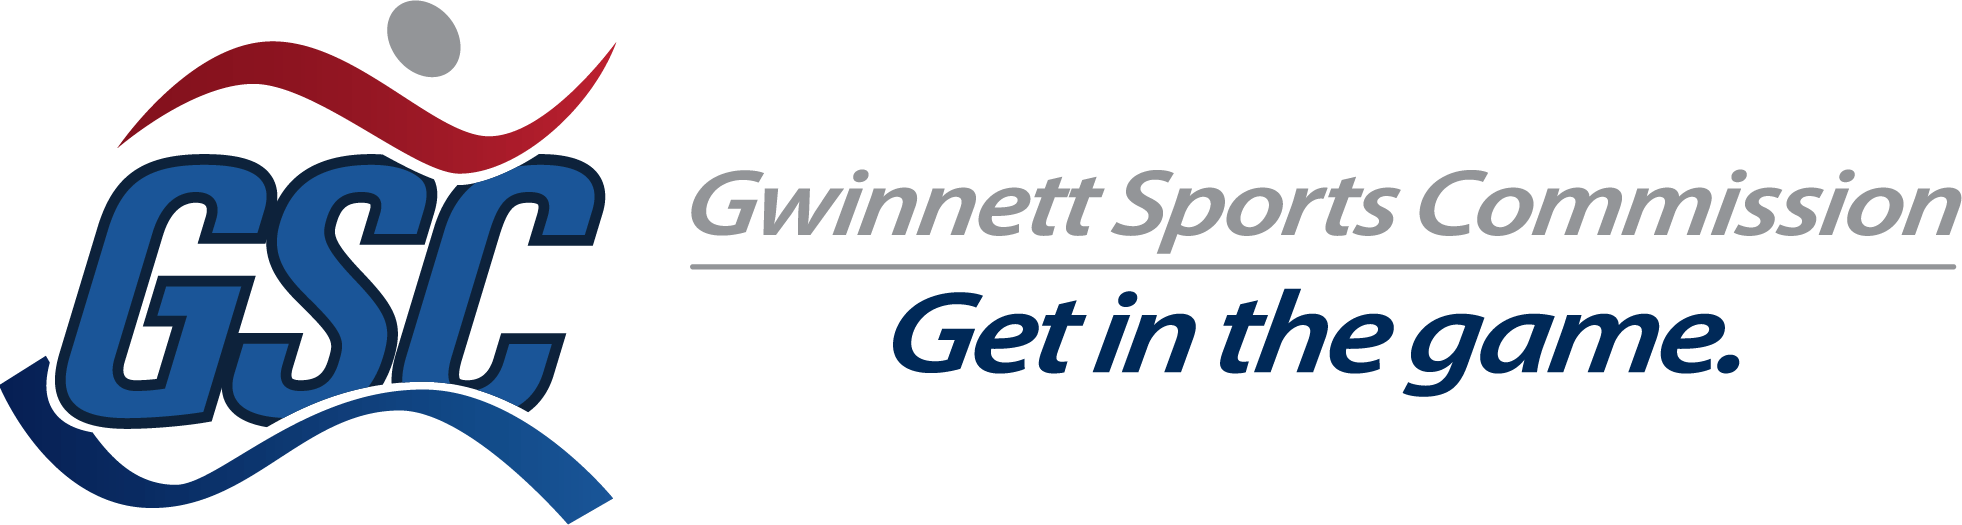 (c) Gwinnettsportscommission.com